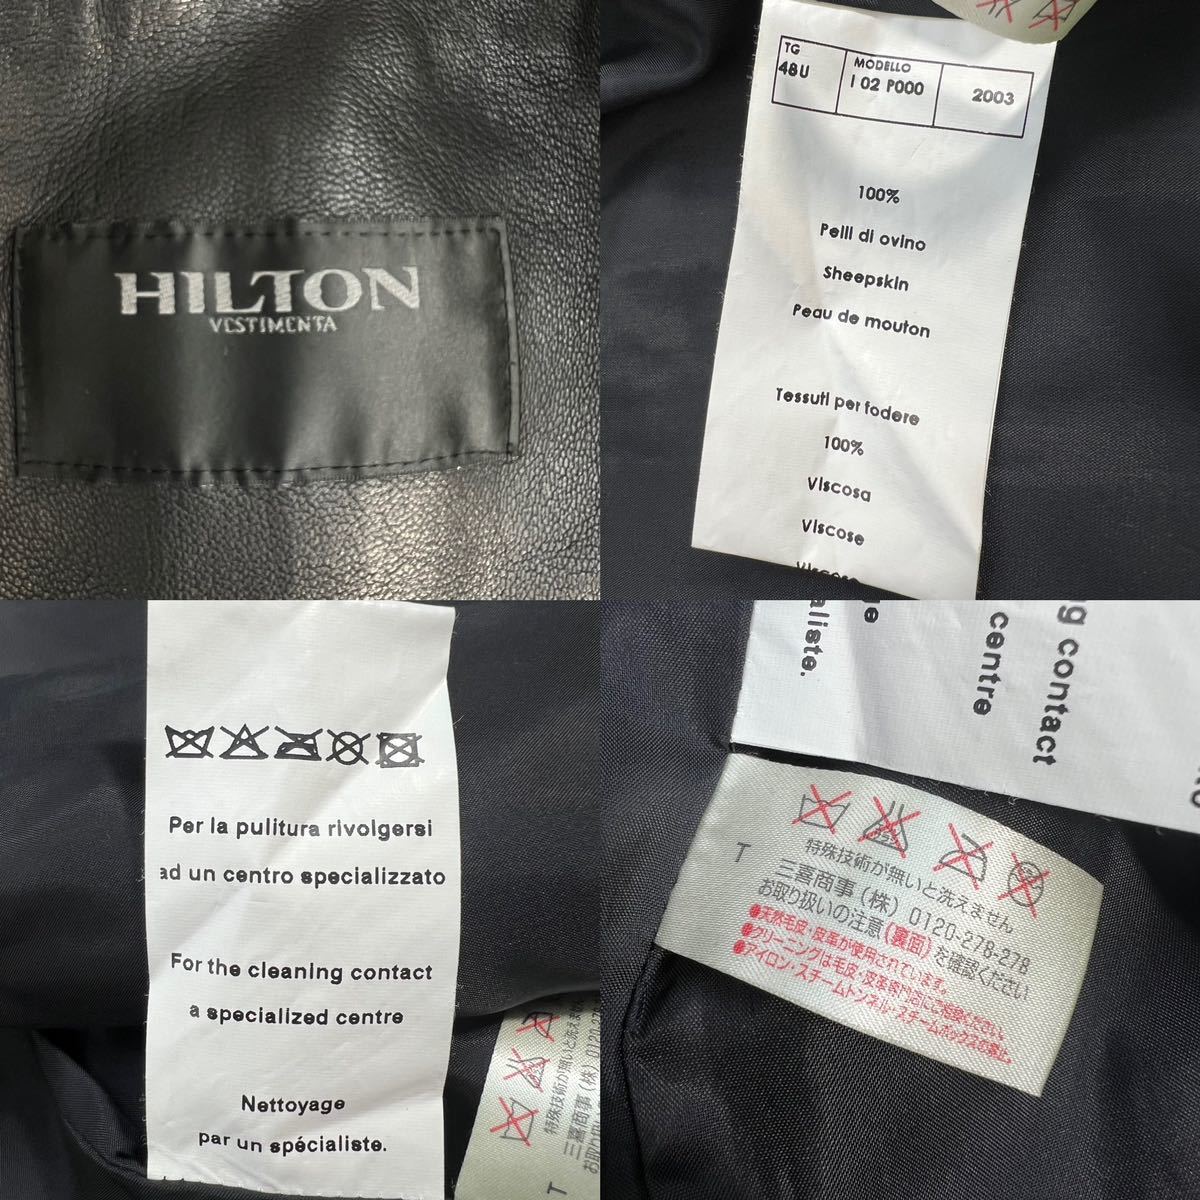 定価約10万 極美品 HILTON ヒルトン レザーテーラードジャケット サイズ48/L相当 羊革 ブラック 美シルエット 上質柔らかレザー 希少 A3013_画像9